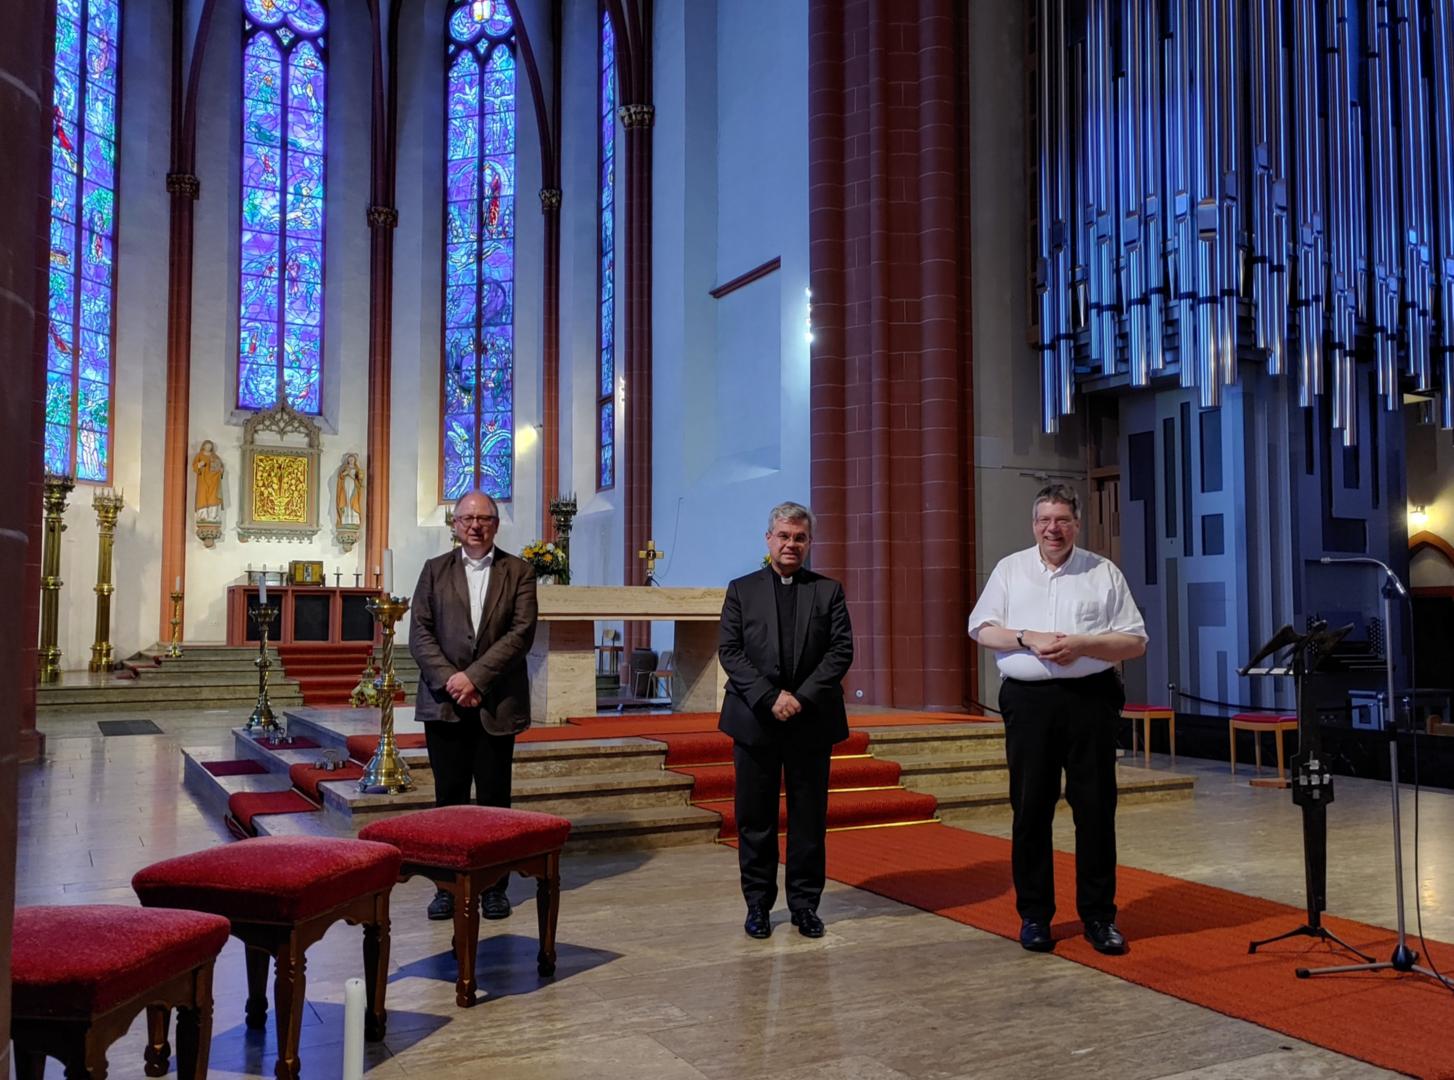 v.l.n.r.: Prof. Dr. Claus Arnold, Weihbischof Dr. Udo Markus Bentz, Domkapitular Dr. Uwe Scharfenecker, 30. Juni 2021 (c) Bistum Mainz / IMKG